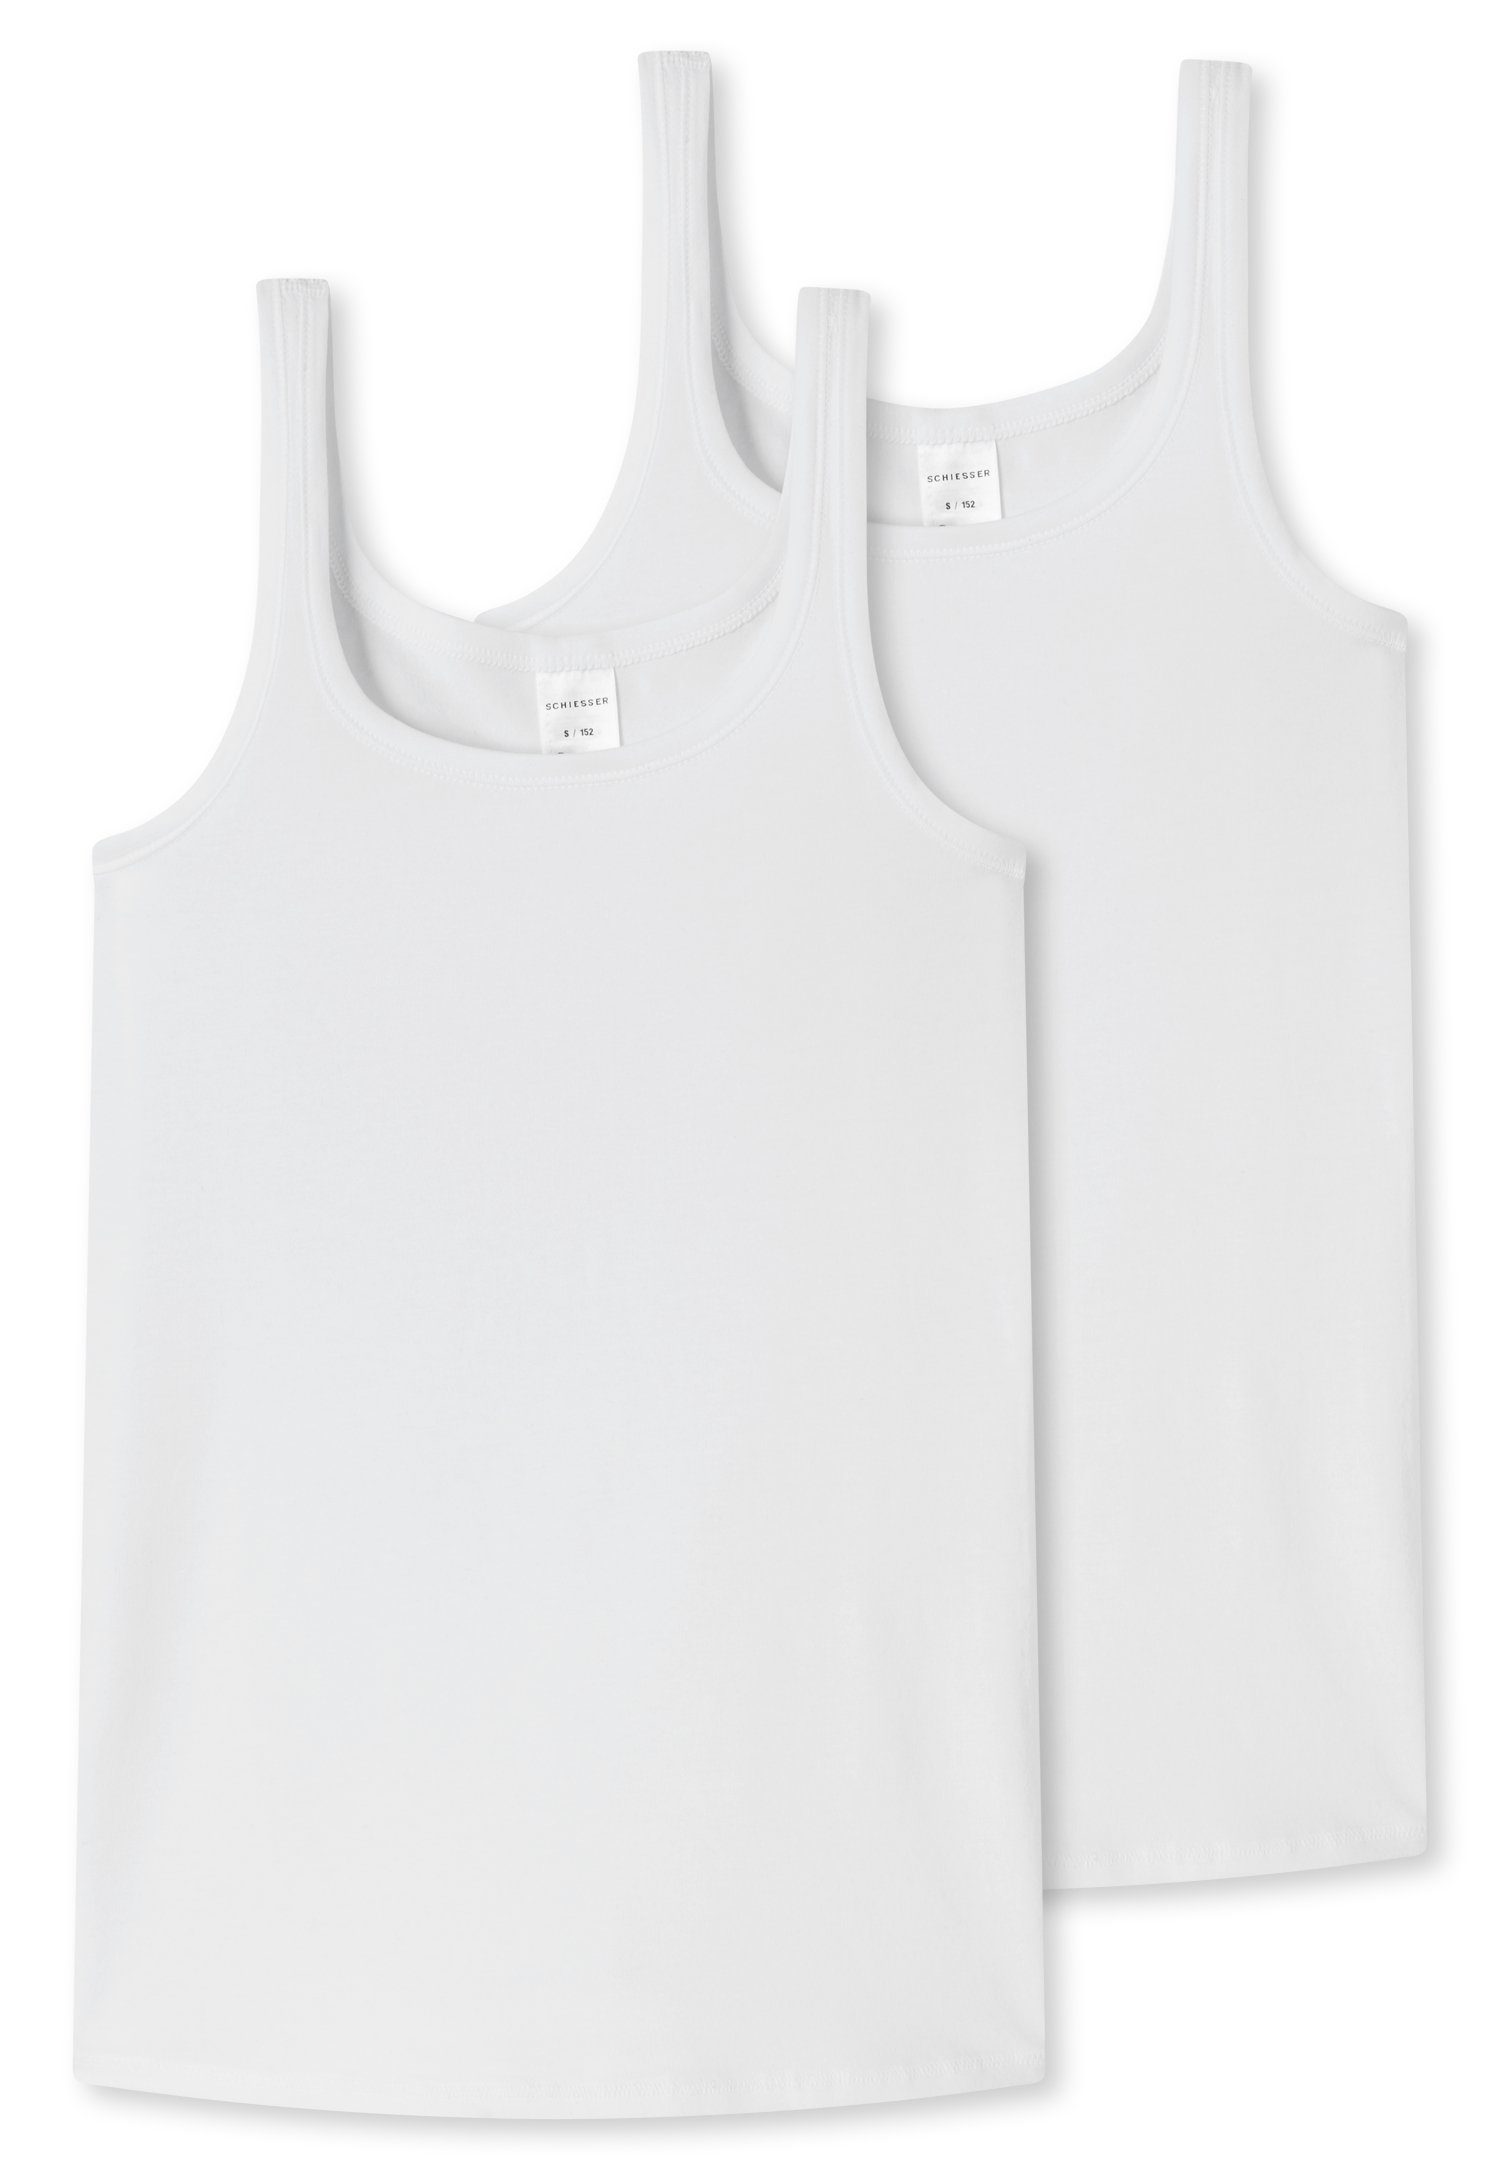 Schiesser Unterhemd Trägern (2er-Pack) weiß breiten mit